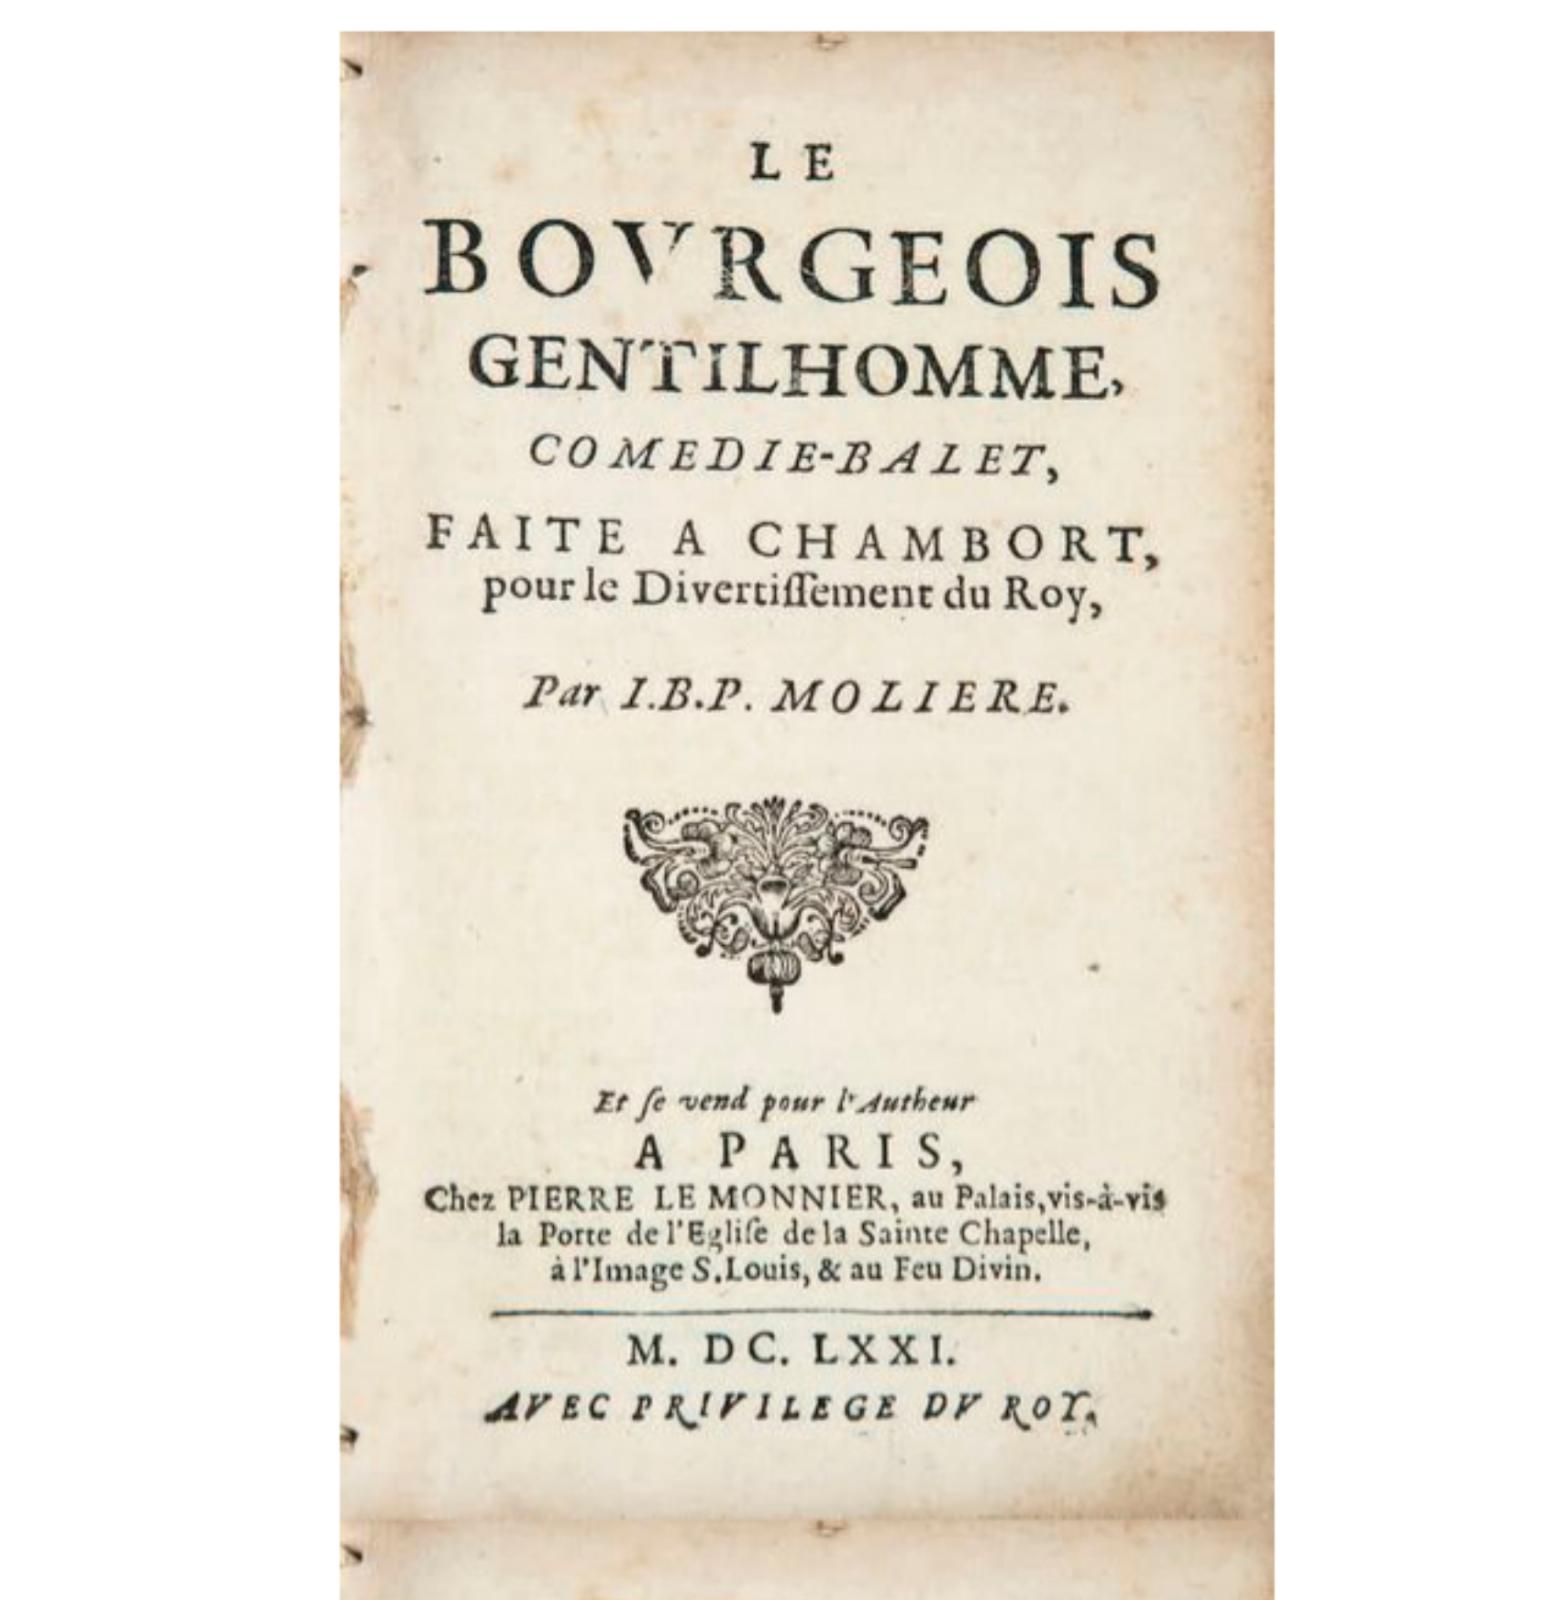 Jean-Baptiste Poquelin dit Molière (1622-1673), Le Bourgeois gentilhomme, comédie-ballet, faite à Chambord pour le Divertissement du Roy, 